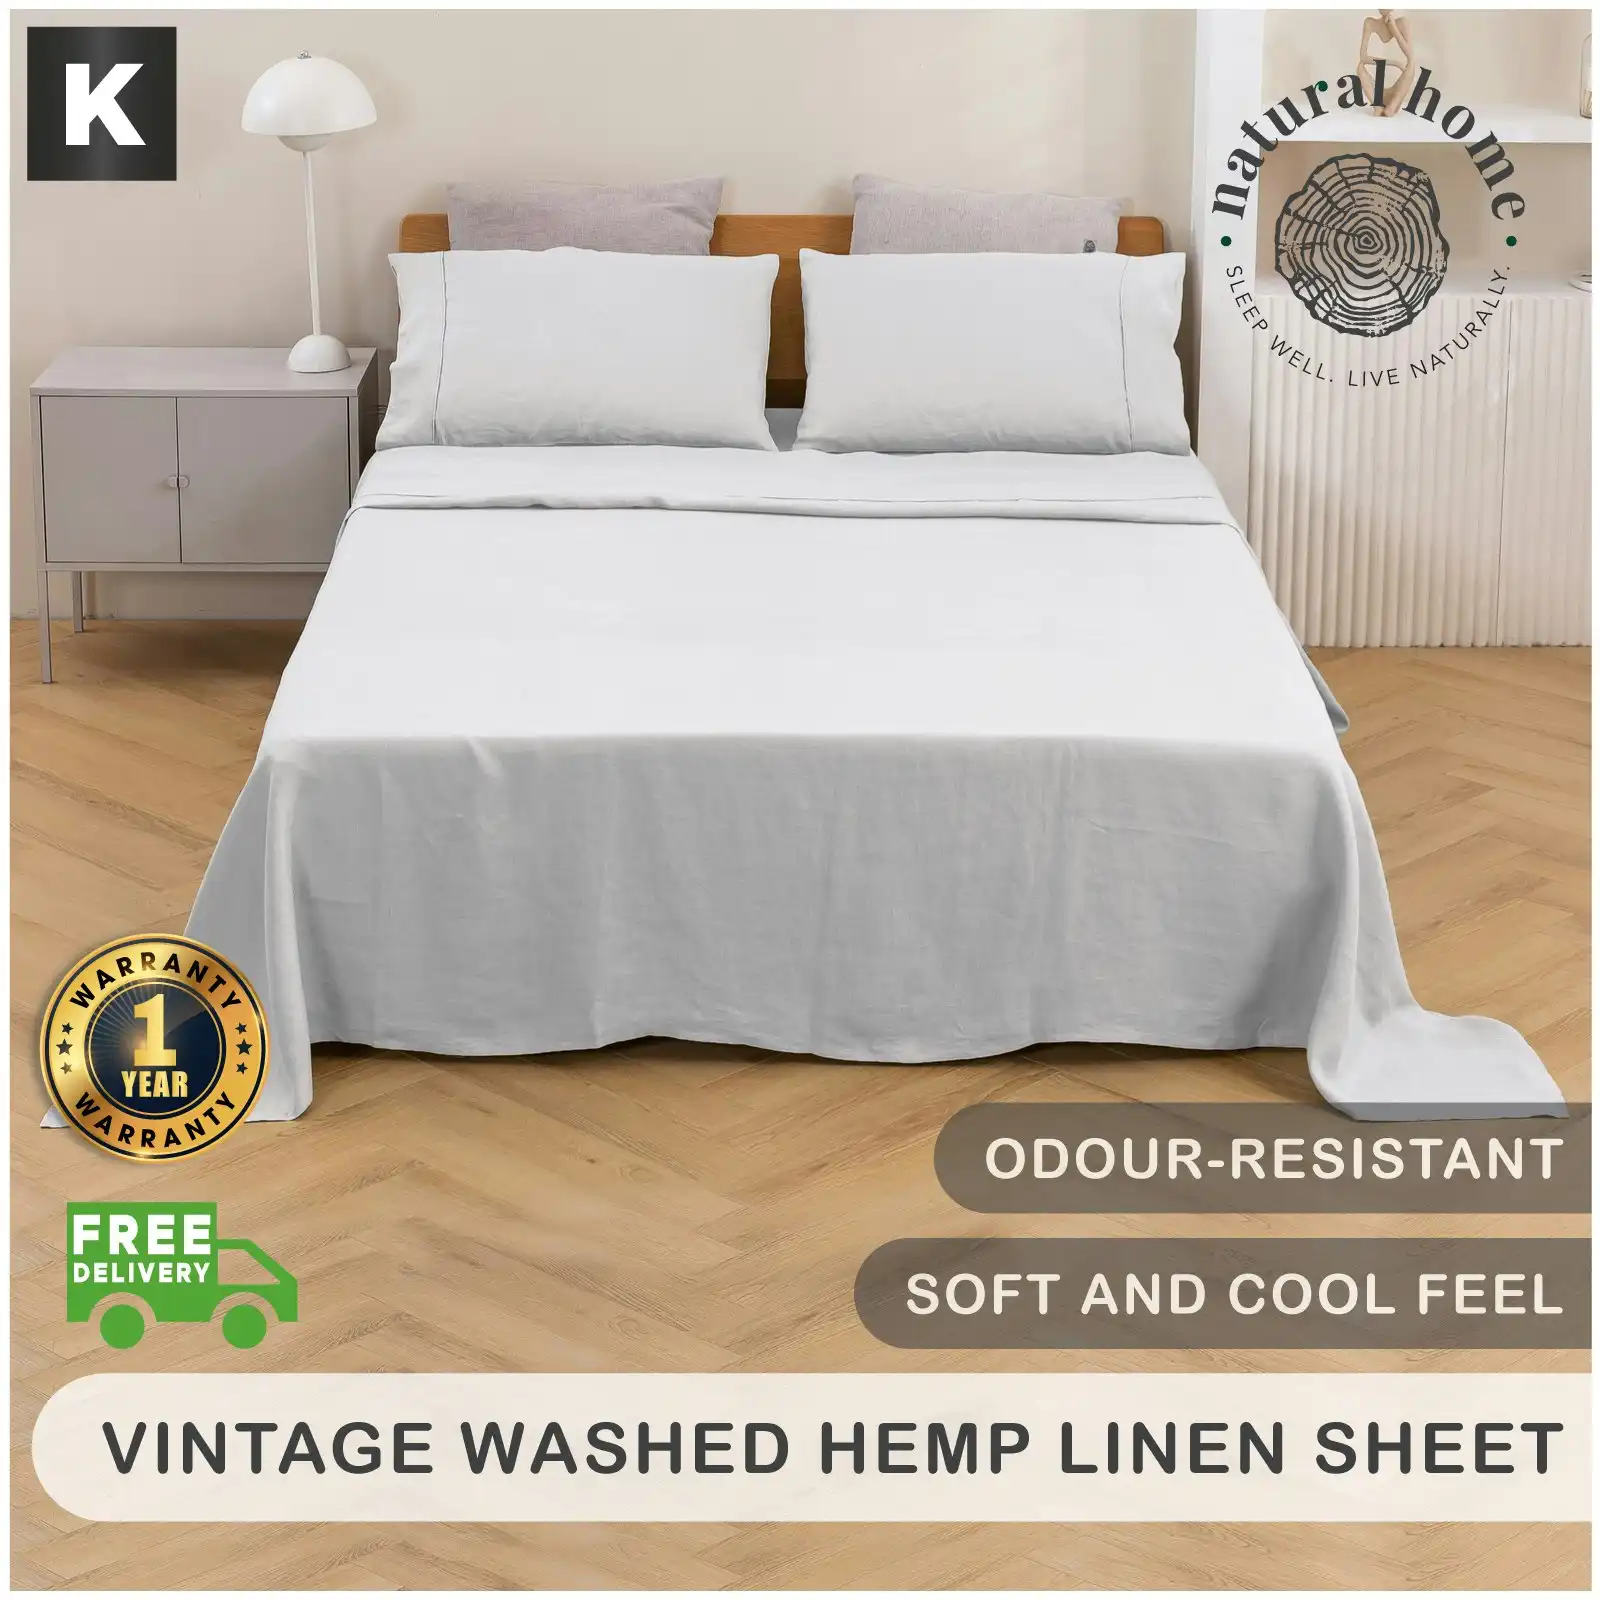 Natural Home Vintage Washed Hemp Linen Sheet Set Dove Grey King Bed